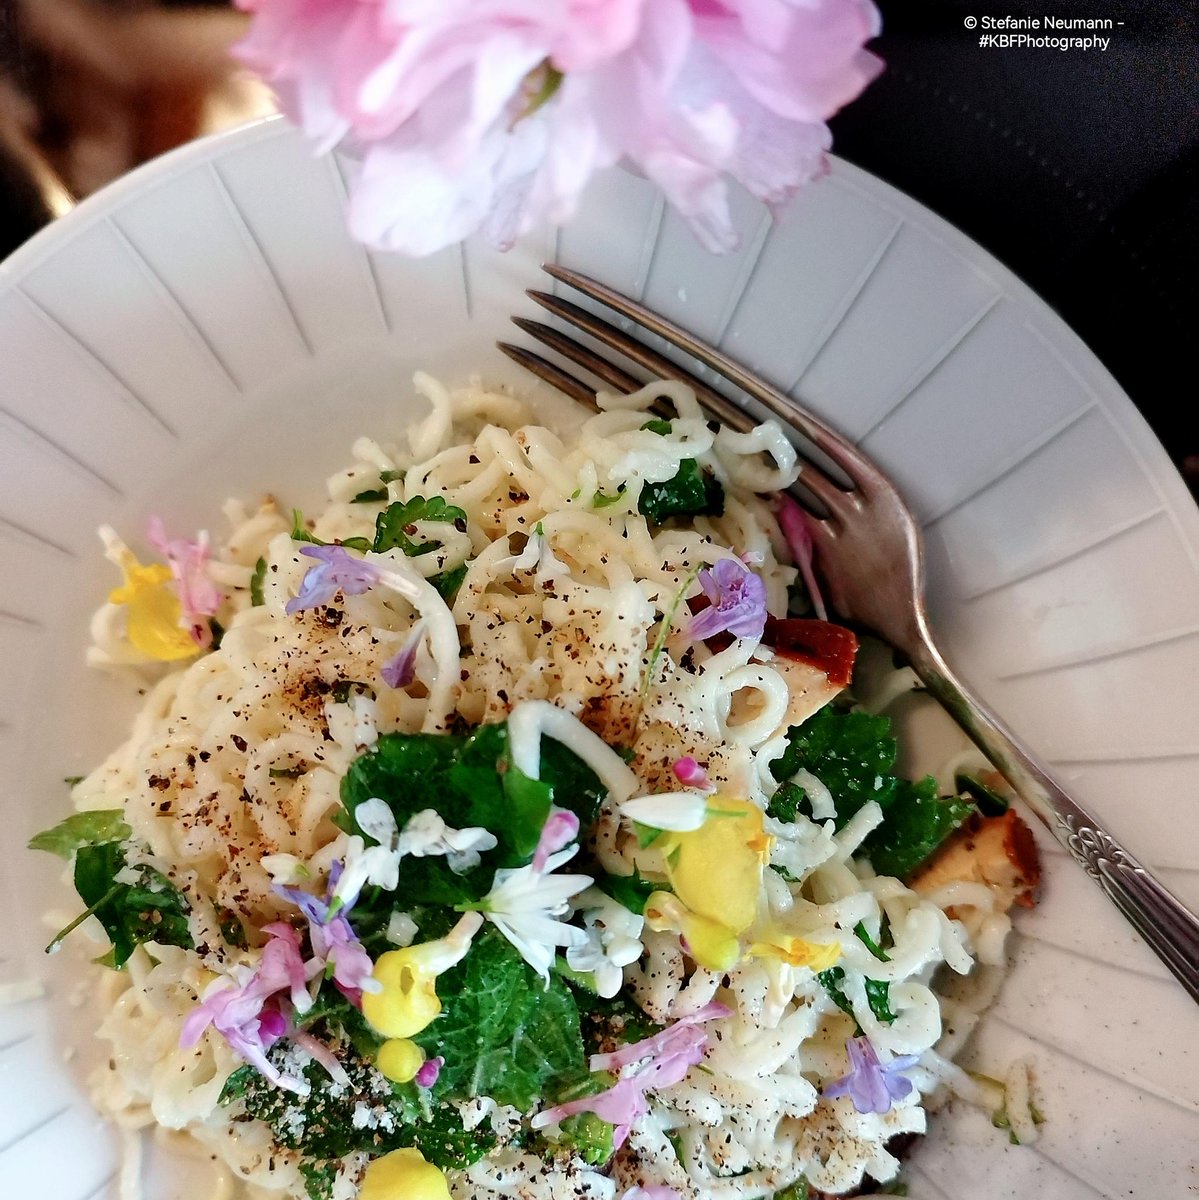 'Soulfood' #FotoVorschlag

Nudeln mit Kräutern und Blüten aus Wildsammlung.
Noodles with herbs and flowers foraged in the wild.

---
#KBFPhotography #MobilePhonePhotography #Photography 
#KBFWotY #Spring #April 
#UrbanNature #KBFMakingOf